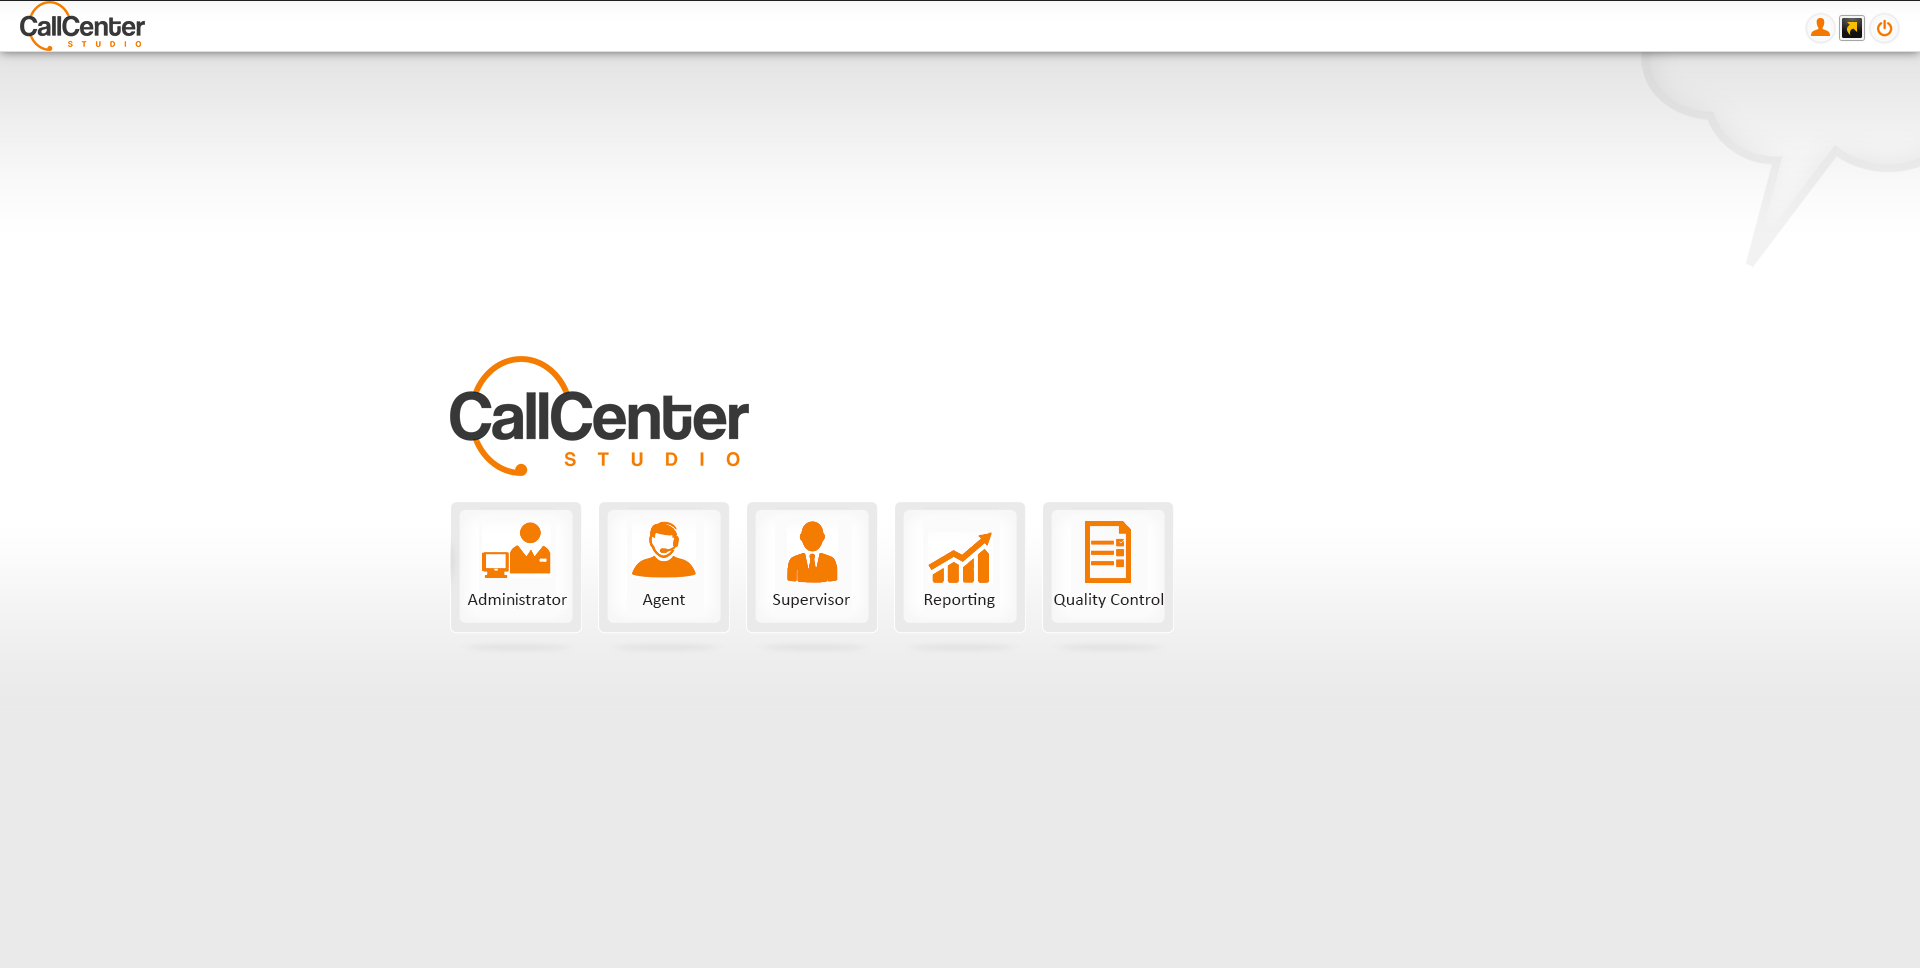 Call Center Studio Software - 7